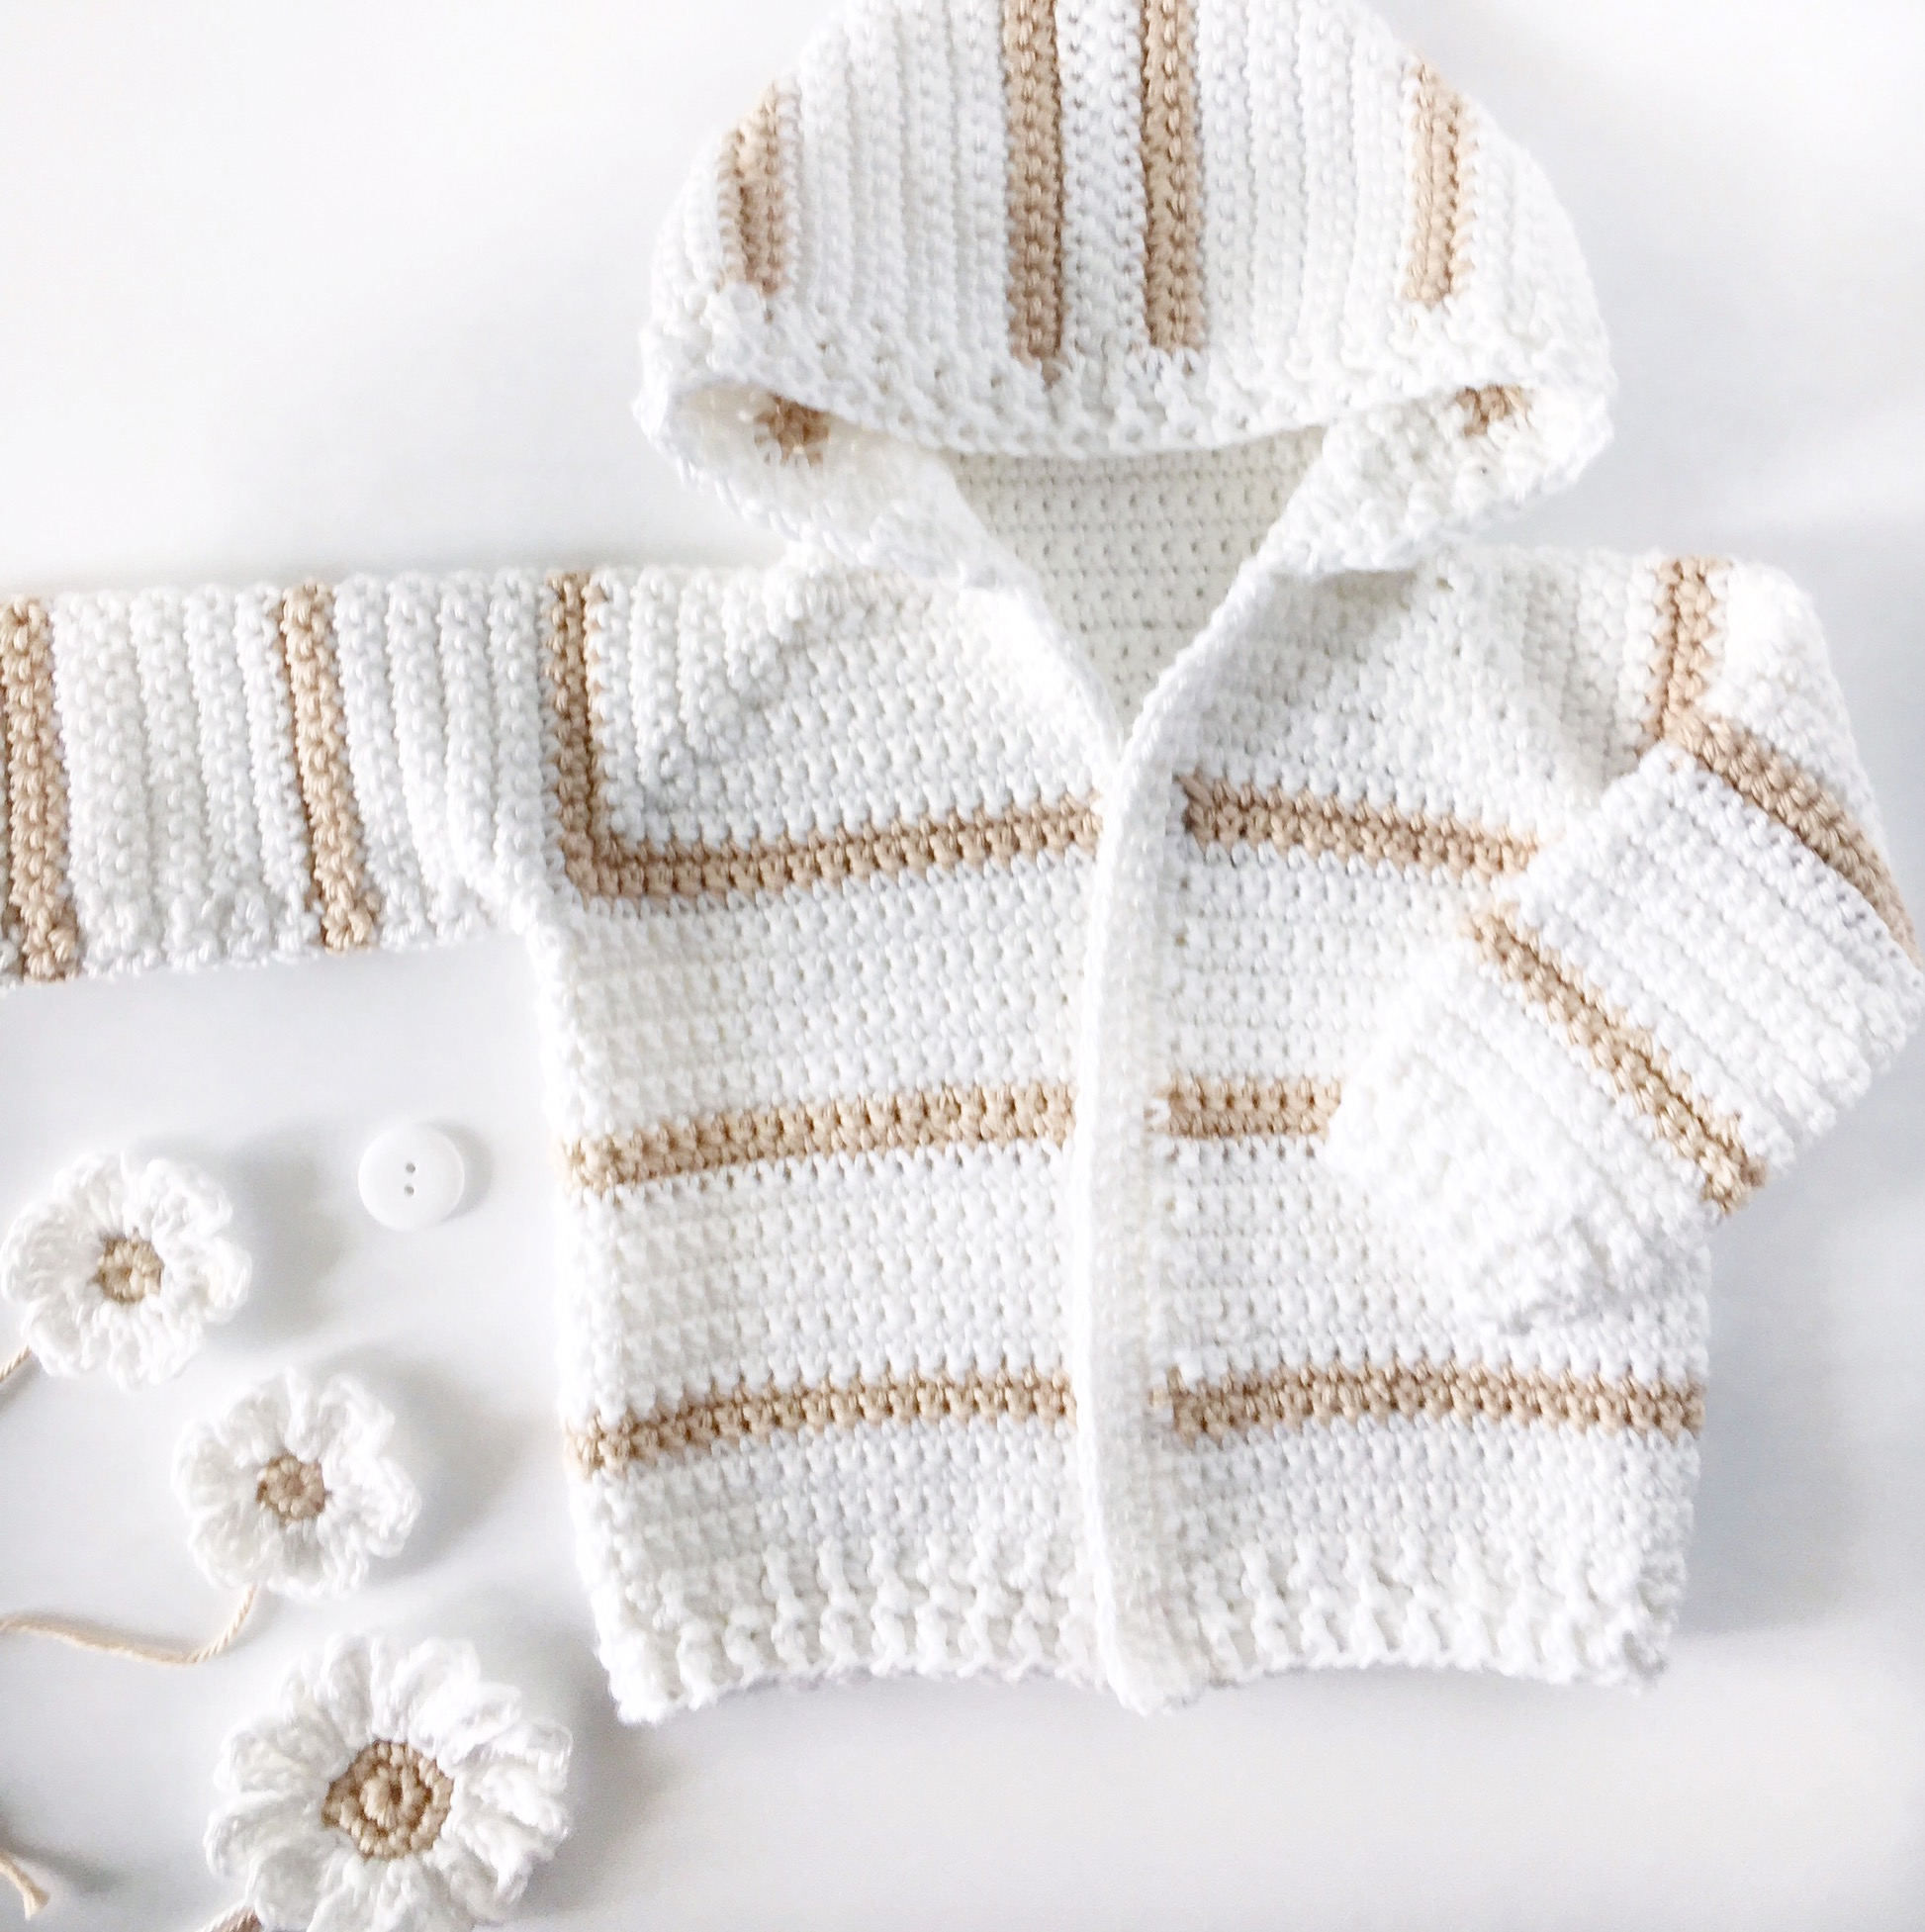 Crochet Baby Sweater Patterns Single Crochet Ba Sweater